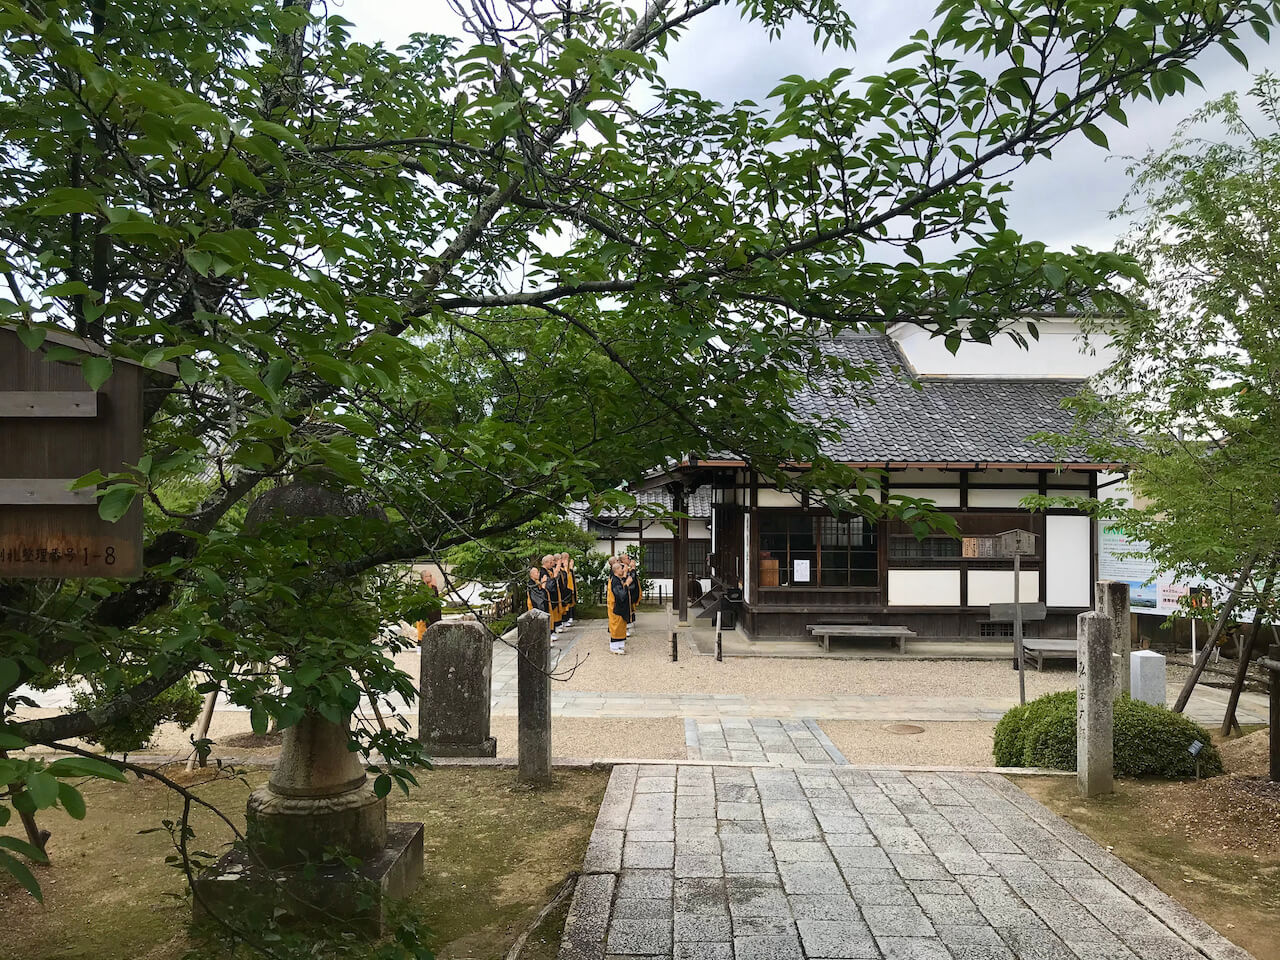 Ninnaji monks in Kyoto